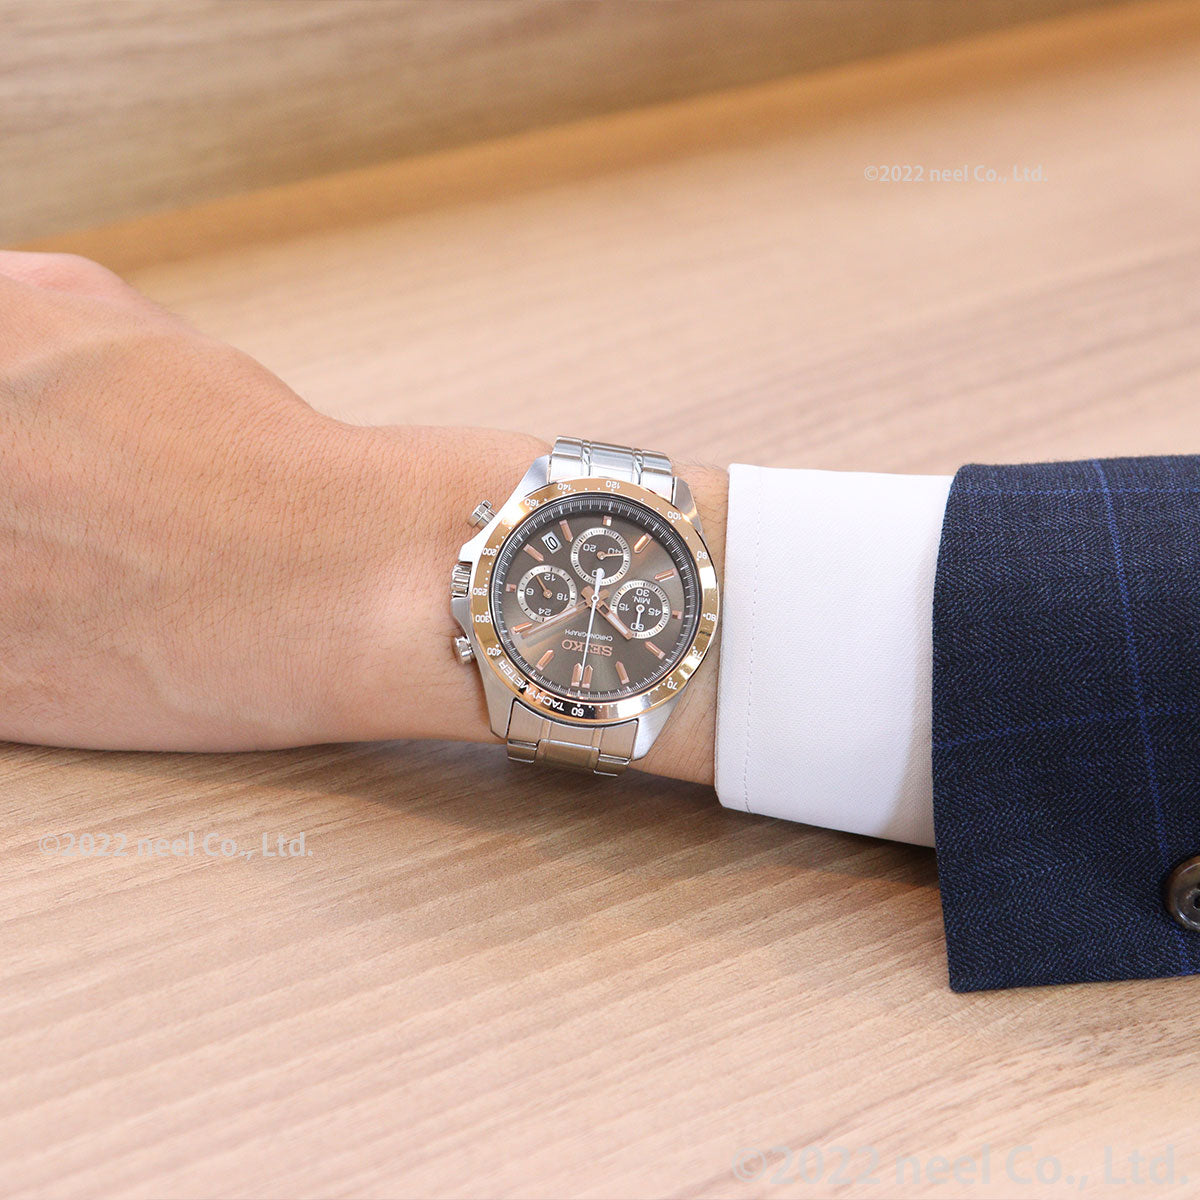 セイコー セレクション  腕時計 クロノグラフ SEIKO SELECTION24時針つき